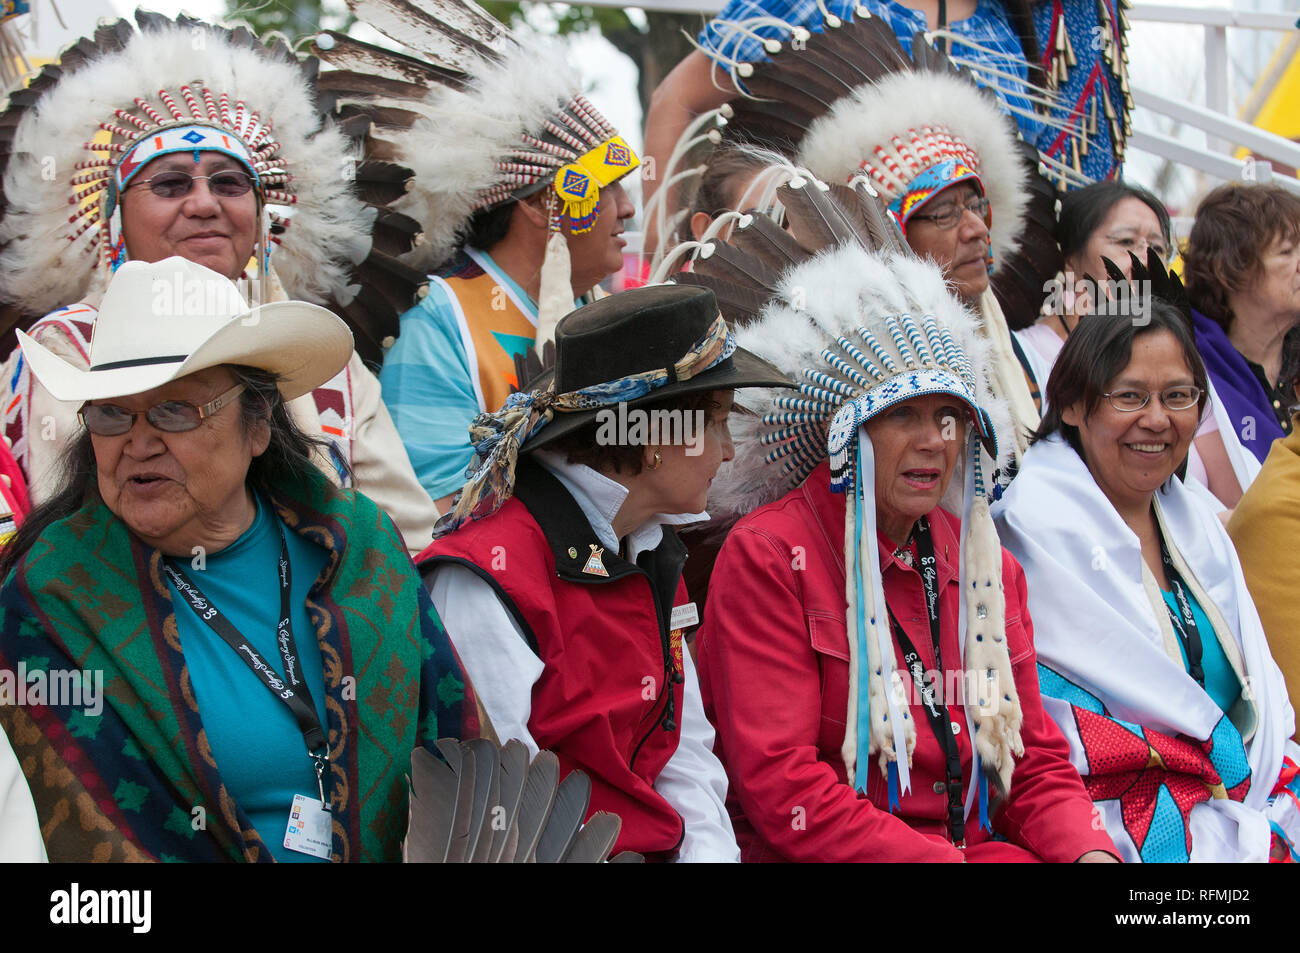 Los nativos canadienses en traje tradicional en Calgary Stampede